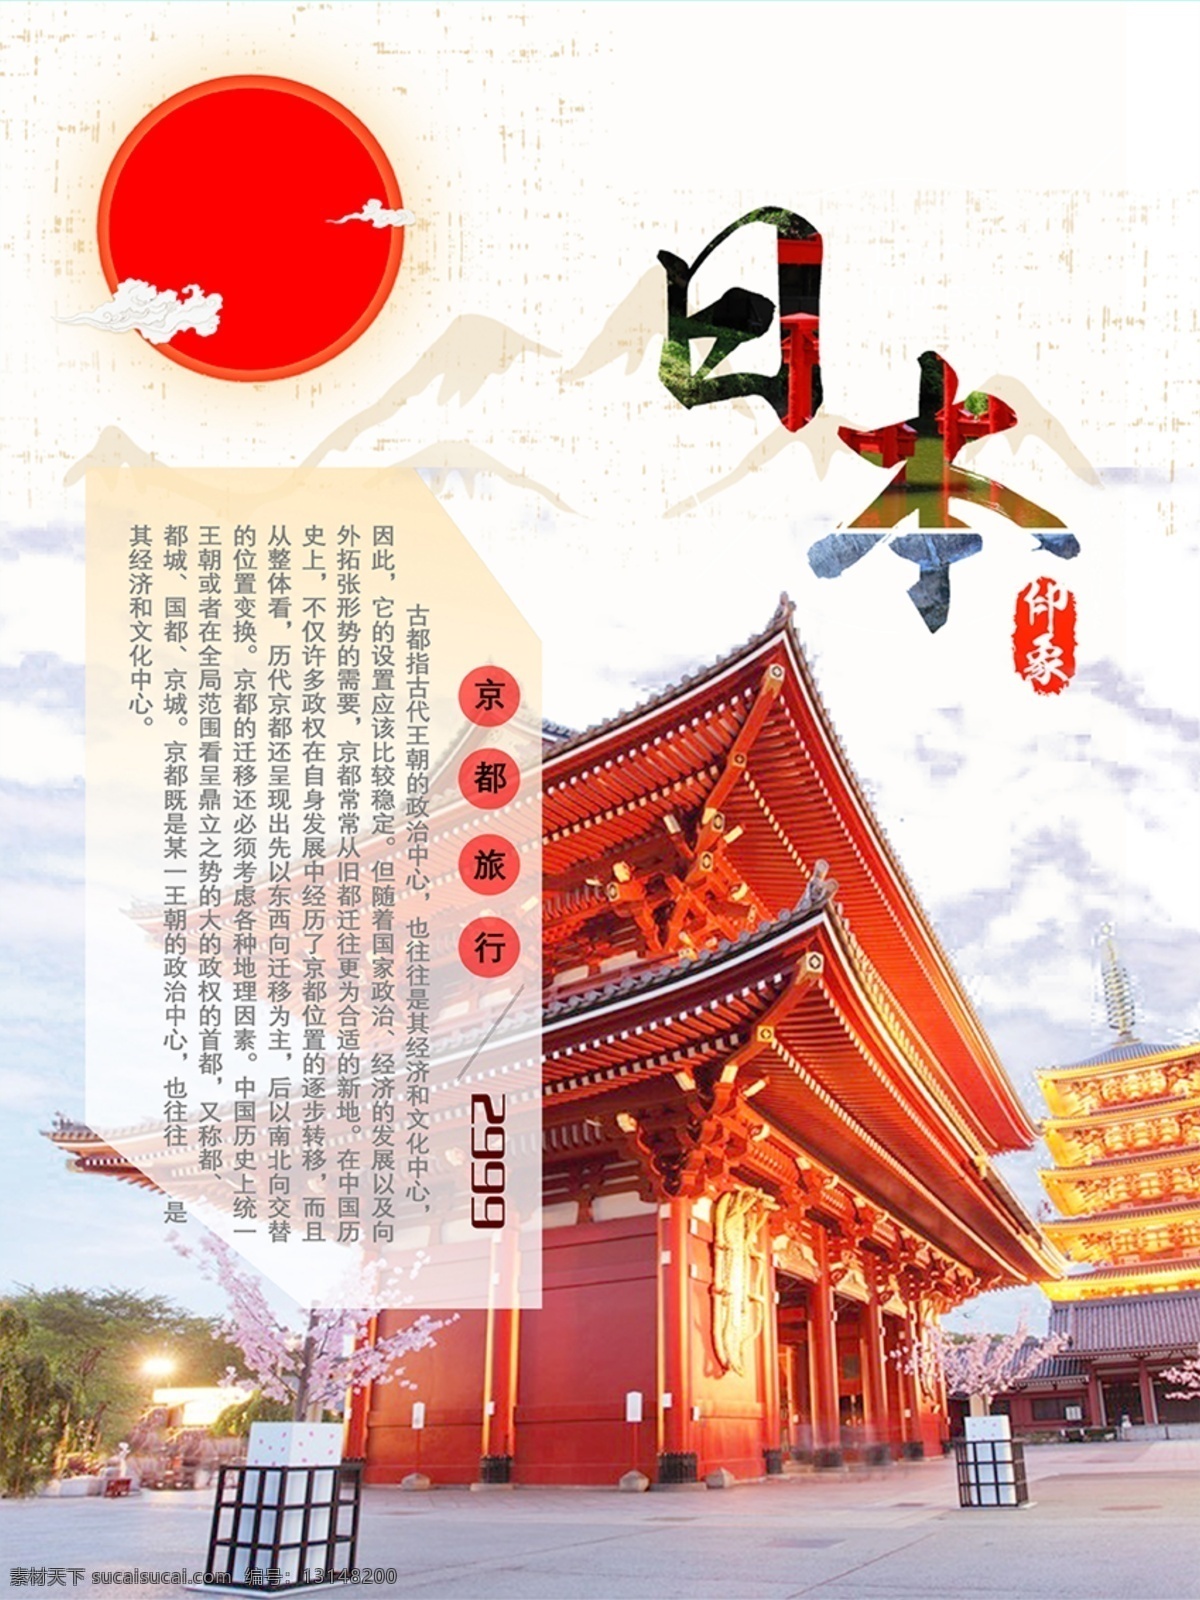 日本 京都 和风 旅行 海报 日本海报 旅行海报 京都海报 日式 日本印象 城市印象